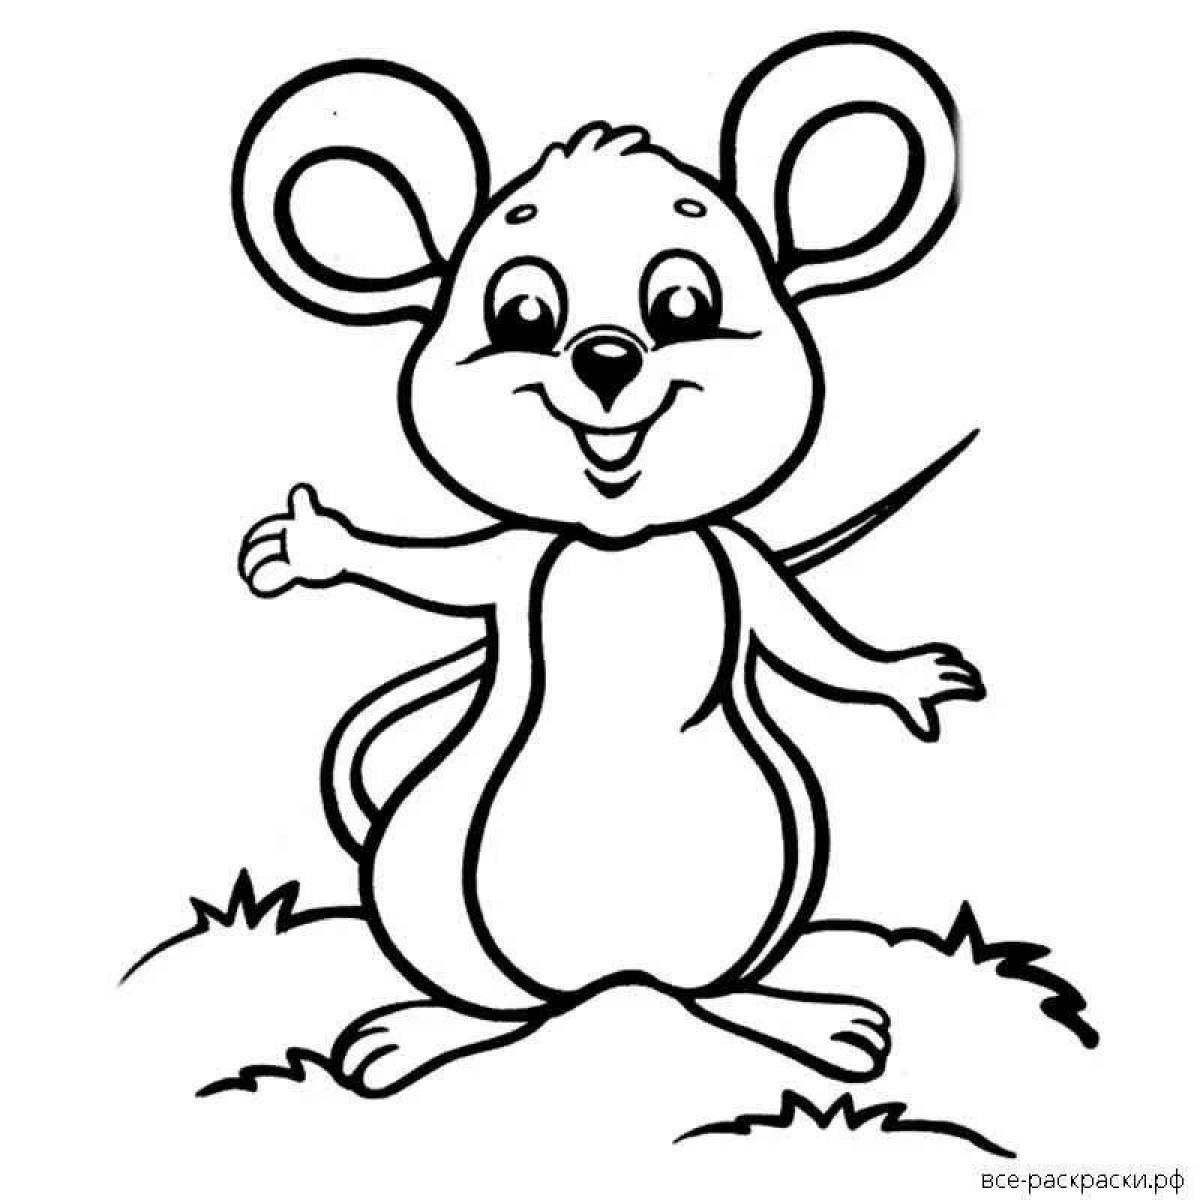 Цветная веселая мышь-раскраска для детей 3-4 лет